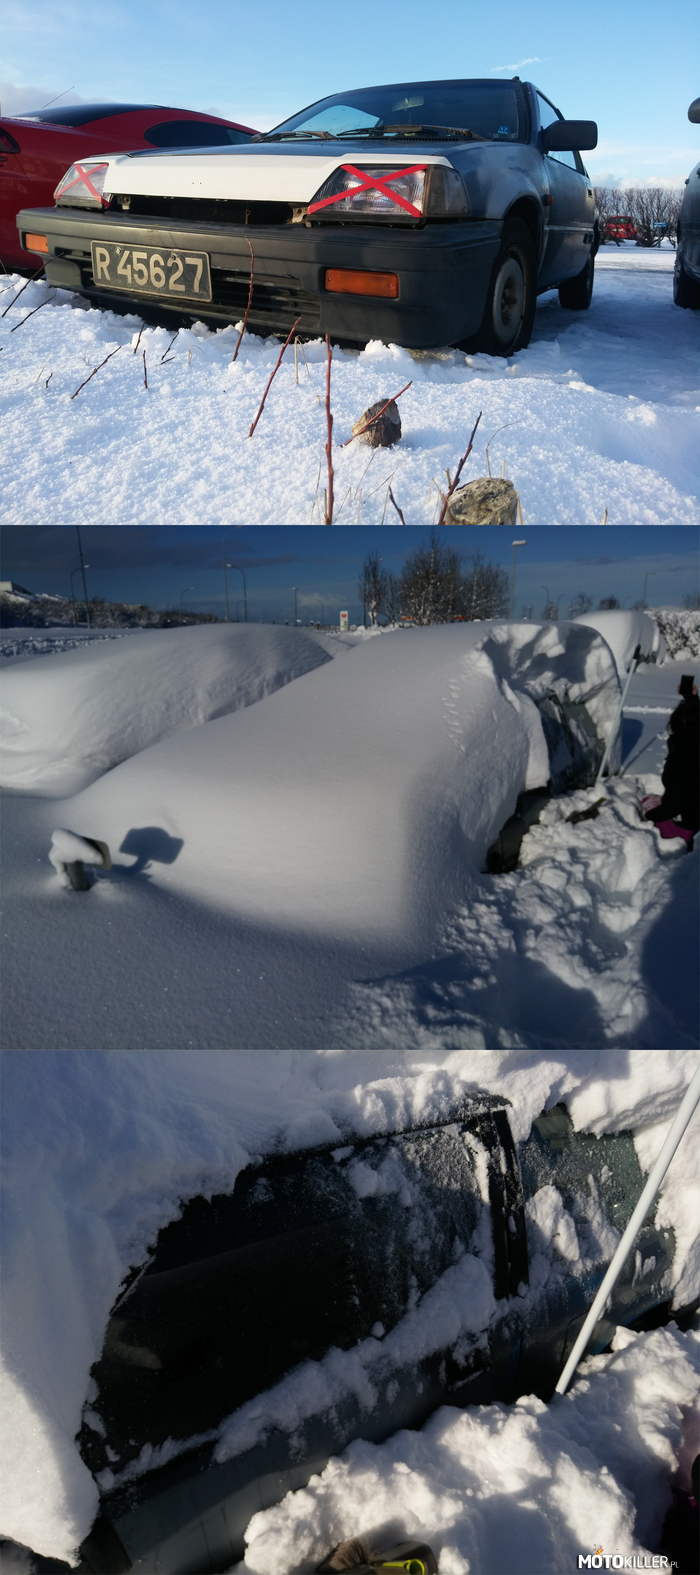 Tymczasem w Islandii – Honda Civic SB3 1987 - Opady śniegu w ciągu jednej nocy 25/26 luty 2017 